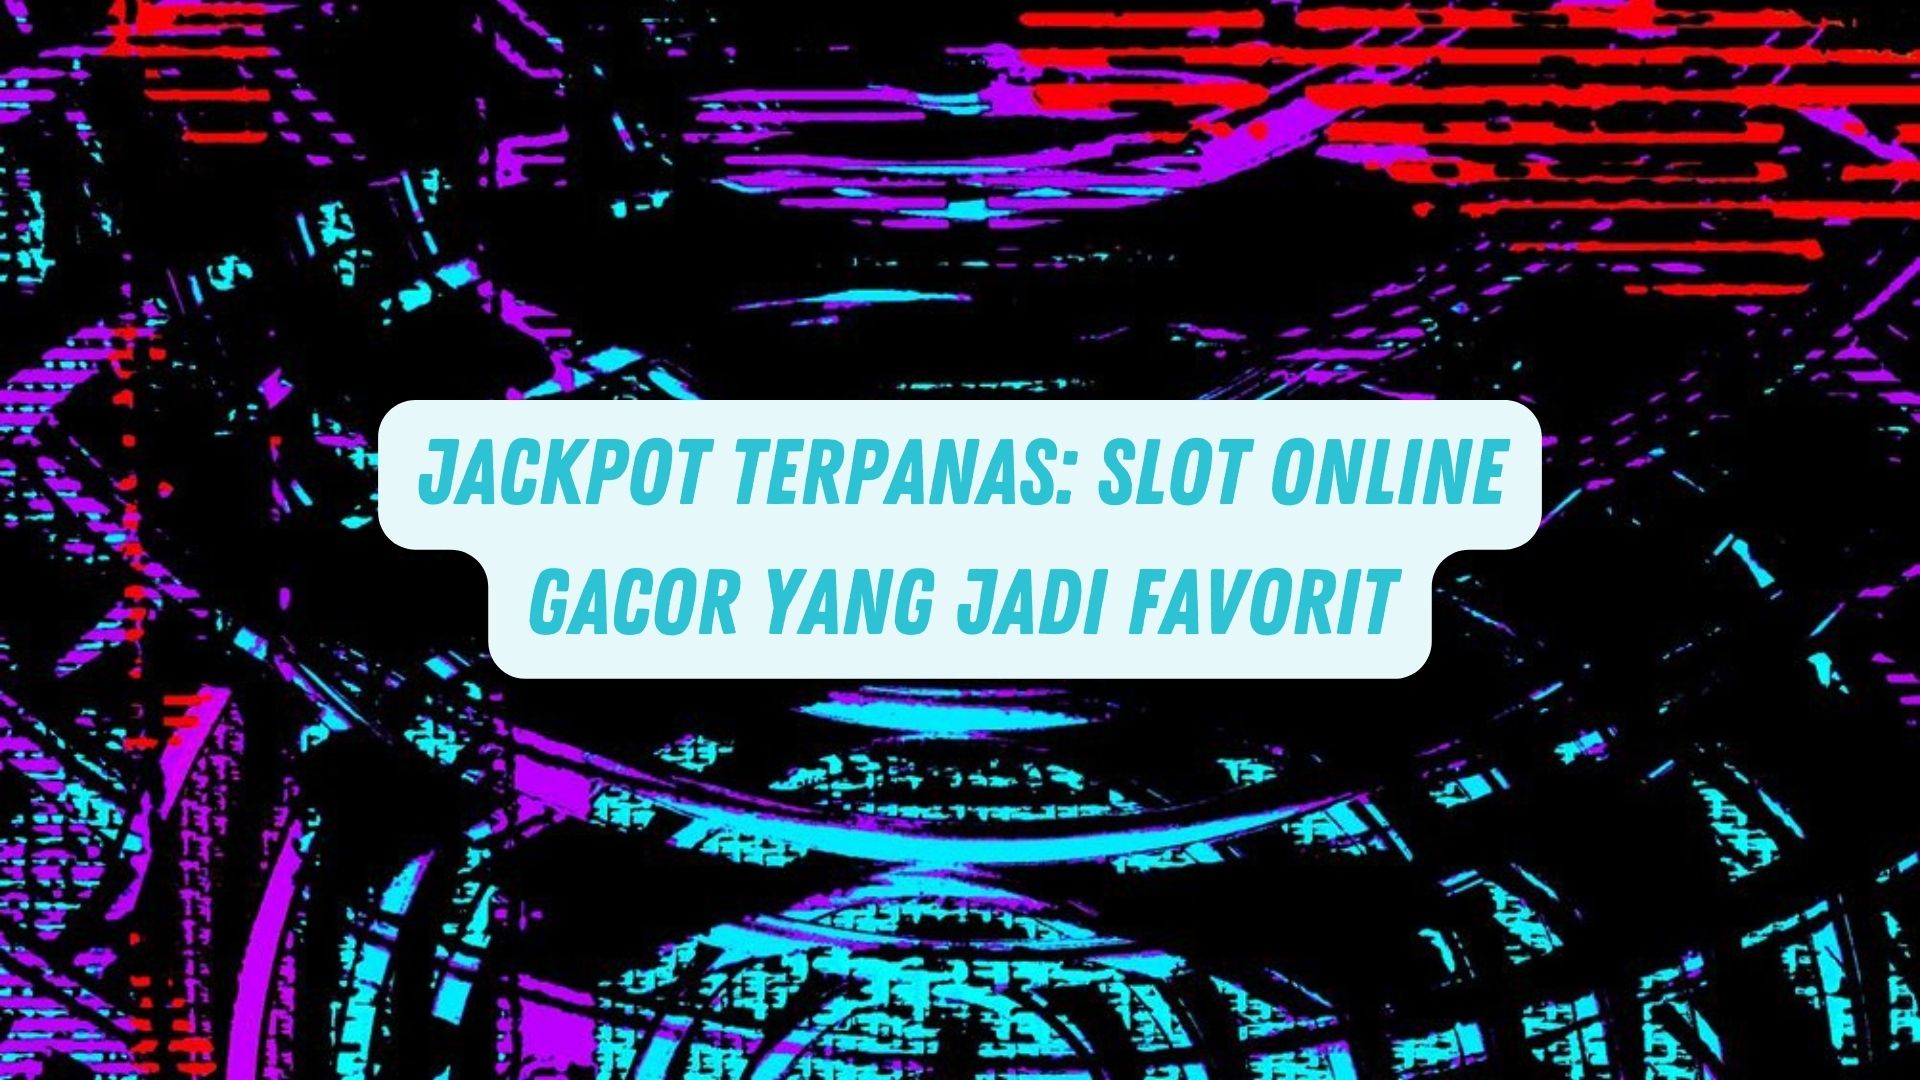 Jackpot Terpanas: Game Online Gacor Yang Jadi Favorit